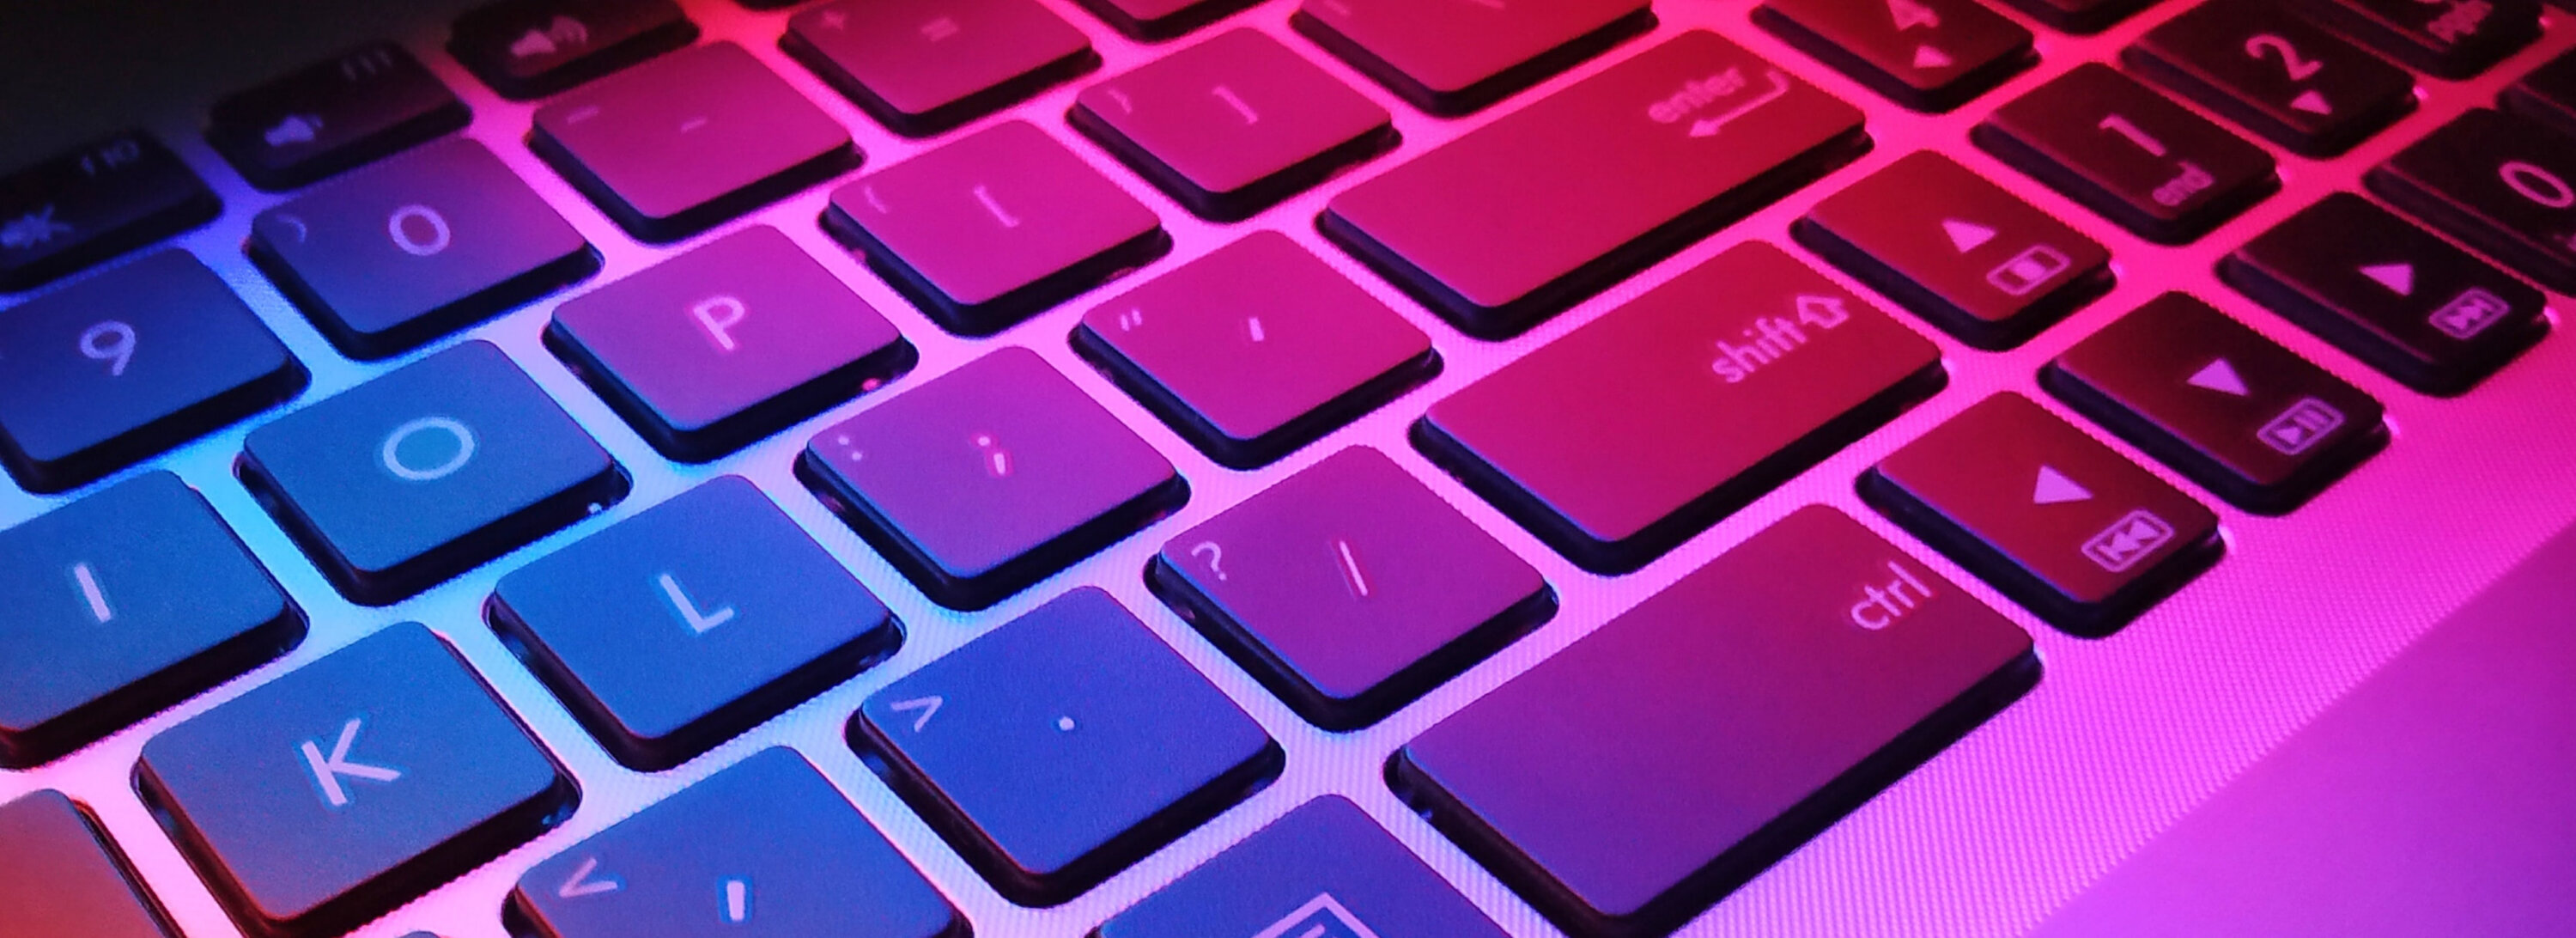 Stylized photo of a computer keyboard.